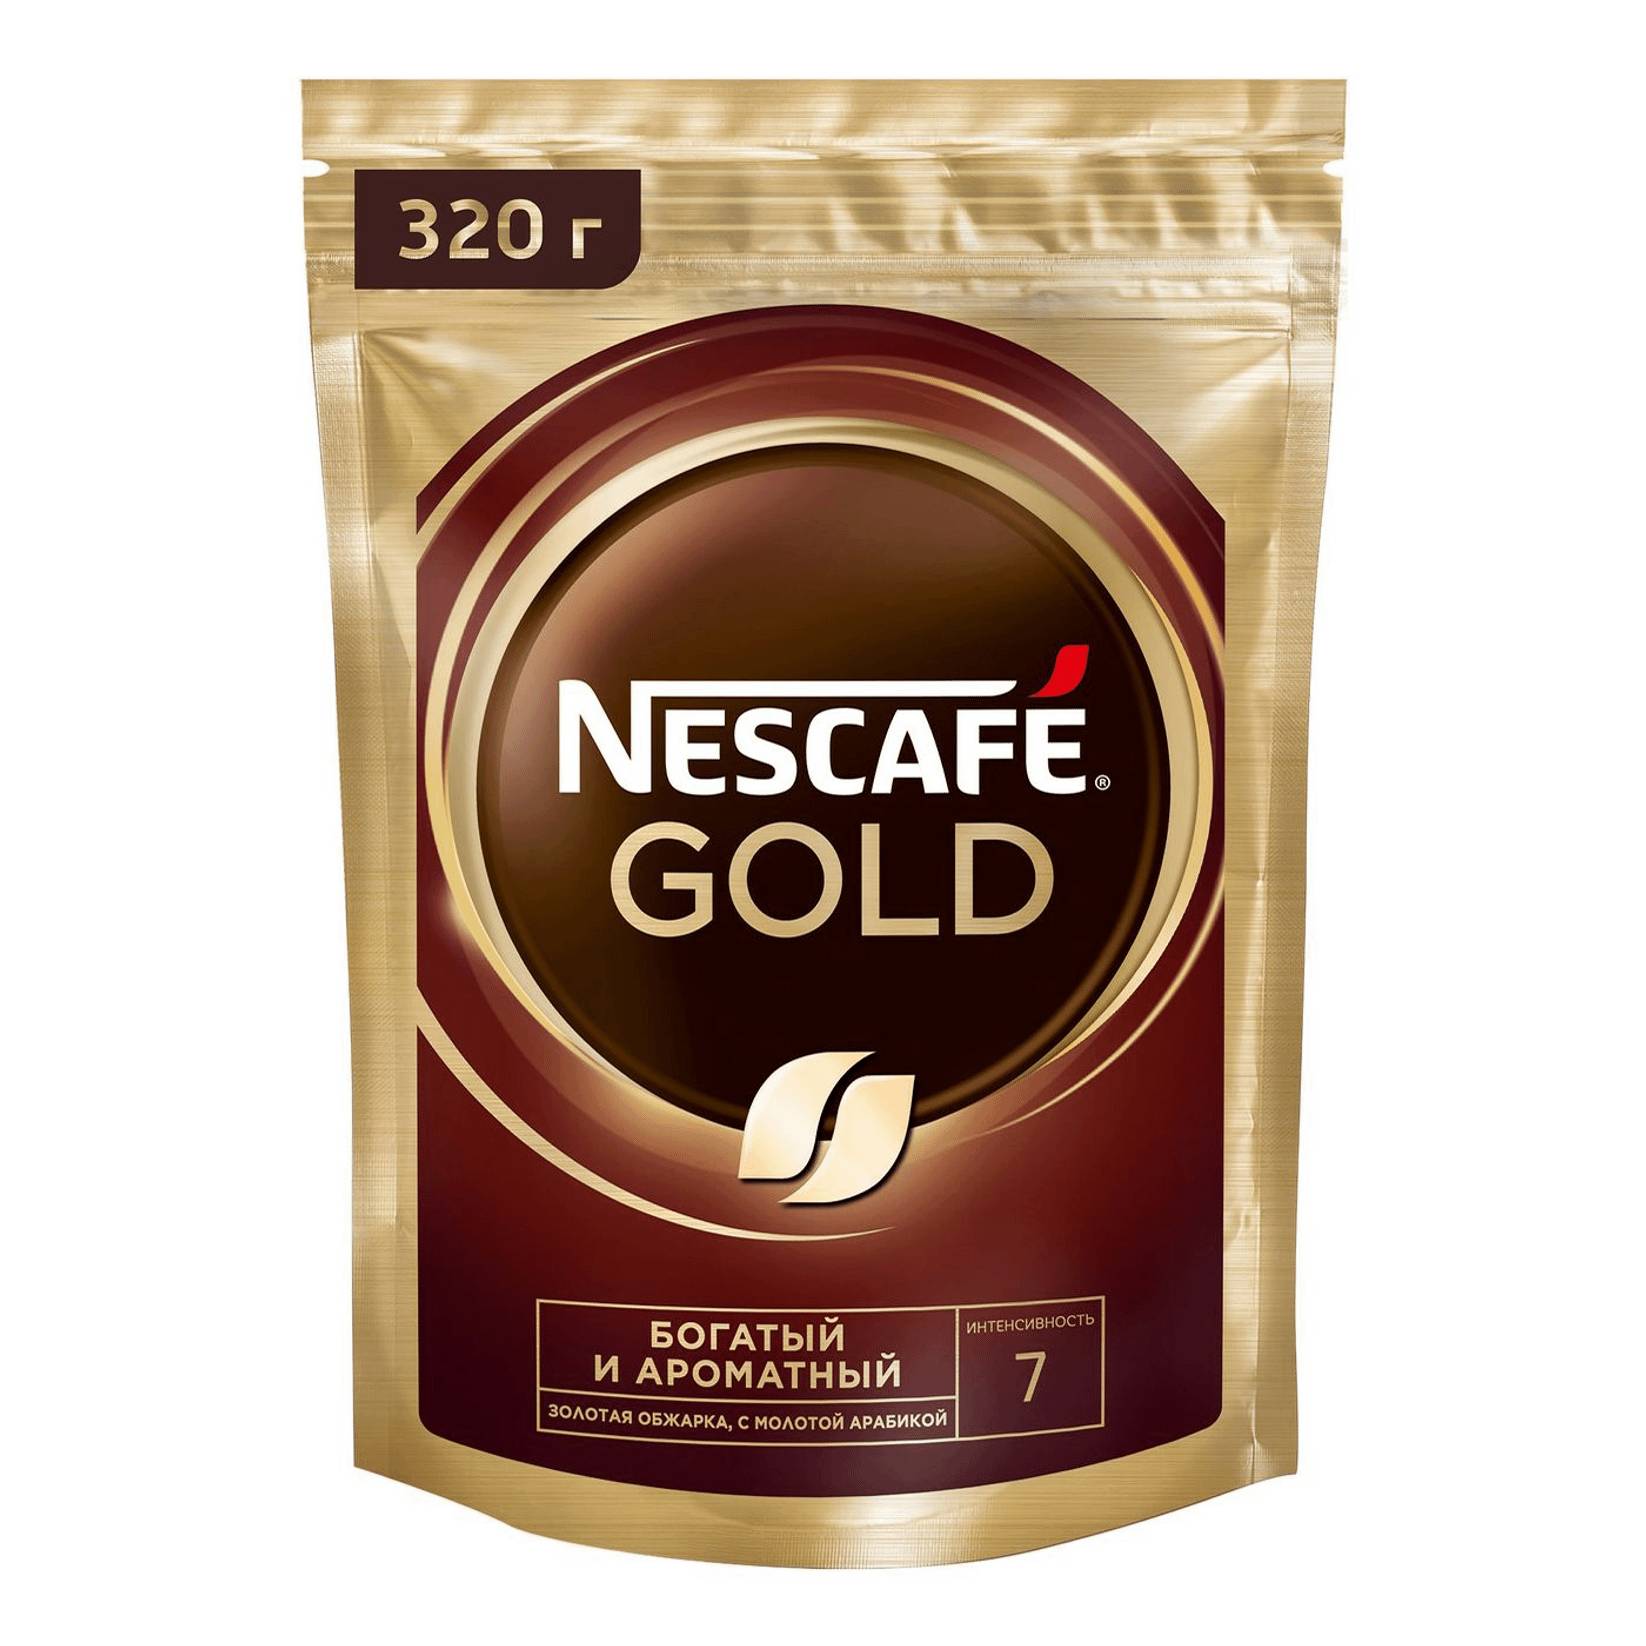 Кофе растворимый Nestle с добавлением молотого, 320 г кофе растворимый jacobs gold 190 г стеклянная банка